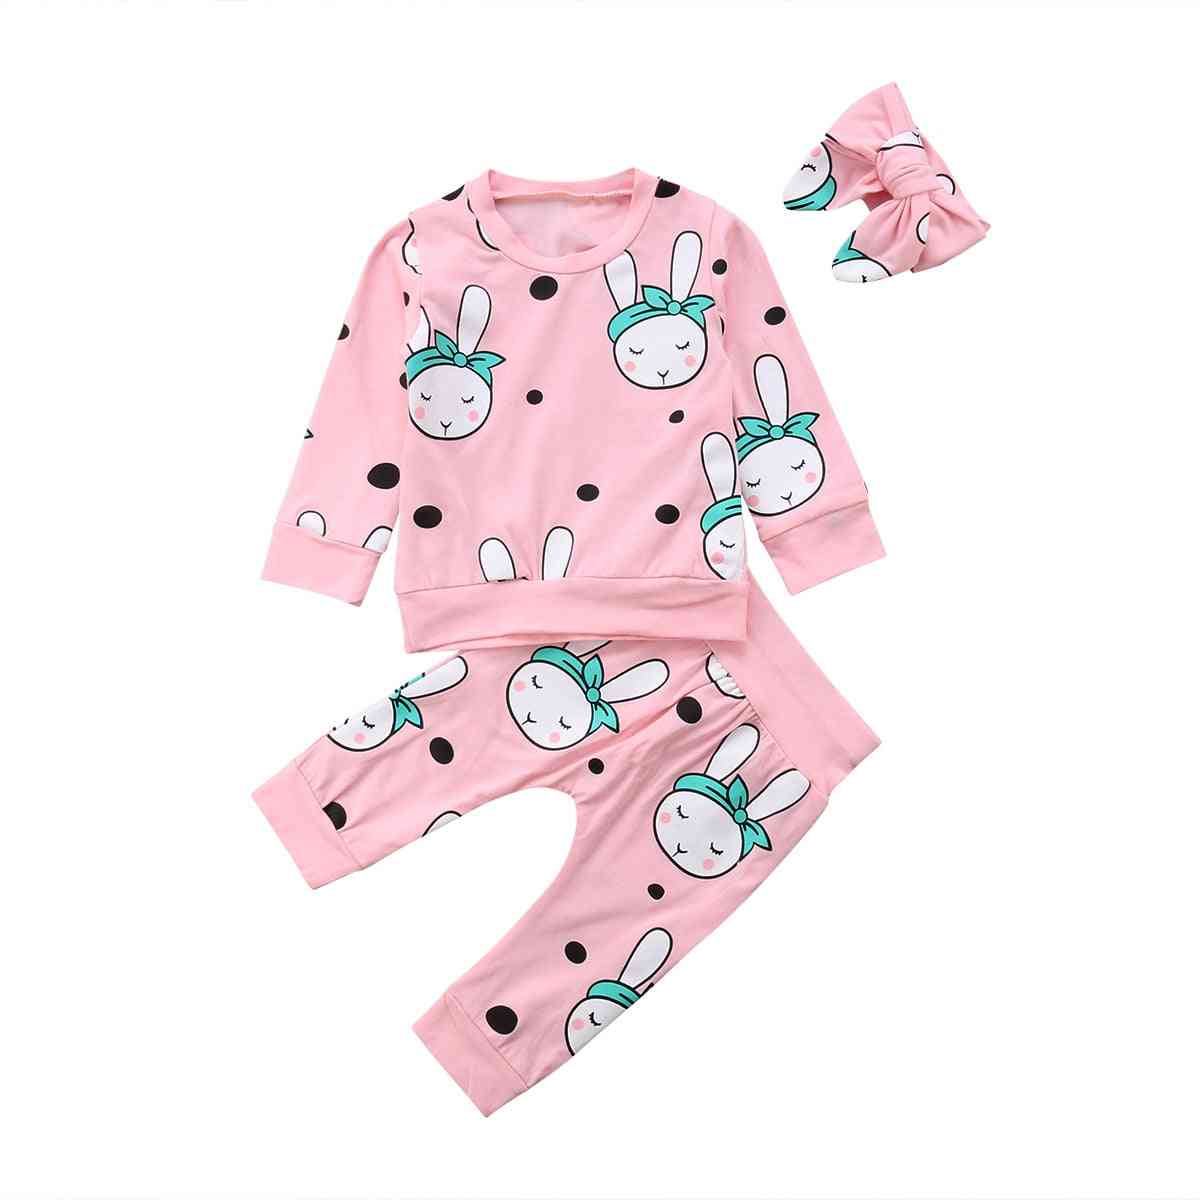 Pyjama syksy talvi taapero vastasyntynyt vauva tyttö poika nukkuja vaatteet asetettu pitkähihainen sarjakuva kanin yläosat + housut pyjamat